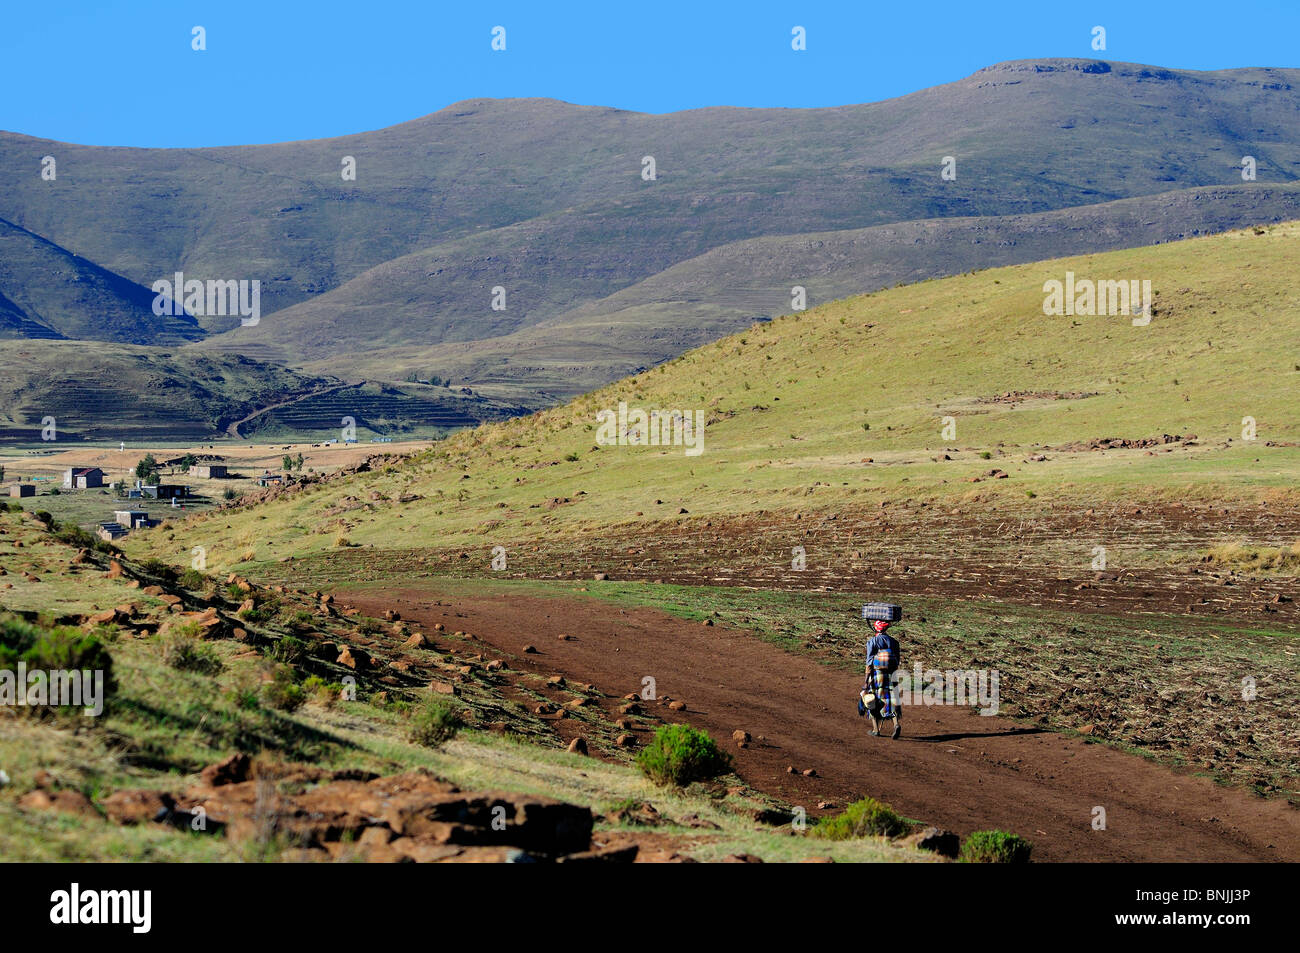 Peuple Basotho habitants locaux autochtones indigènes près Les Lagier Lesotho Afrique australe femme mountain mountains way Banque D'Images